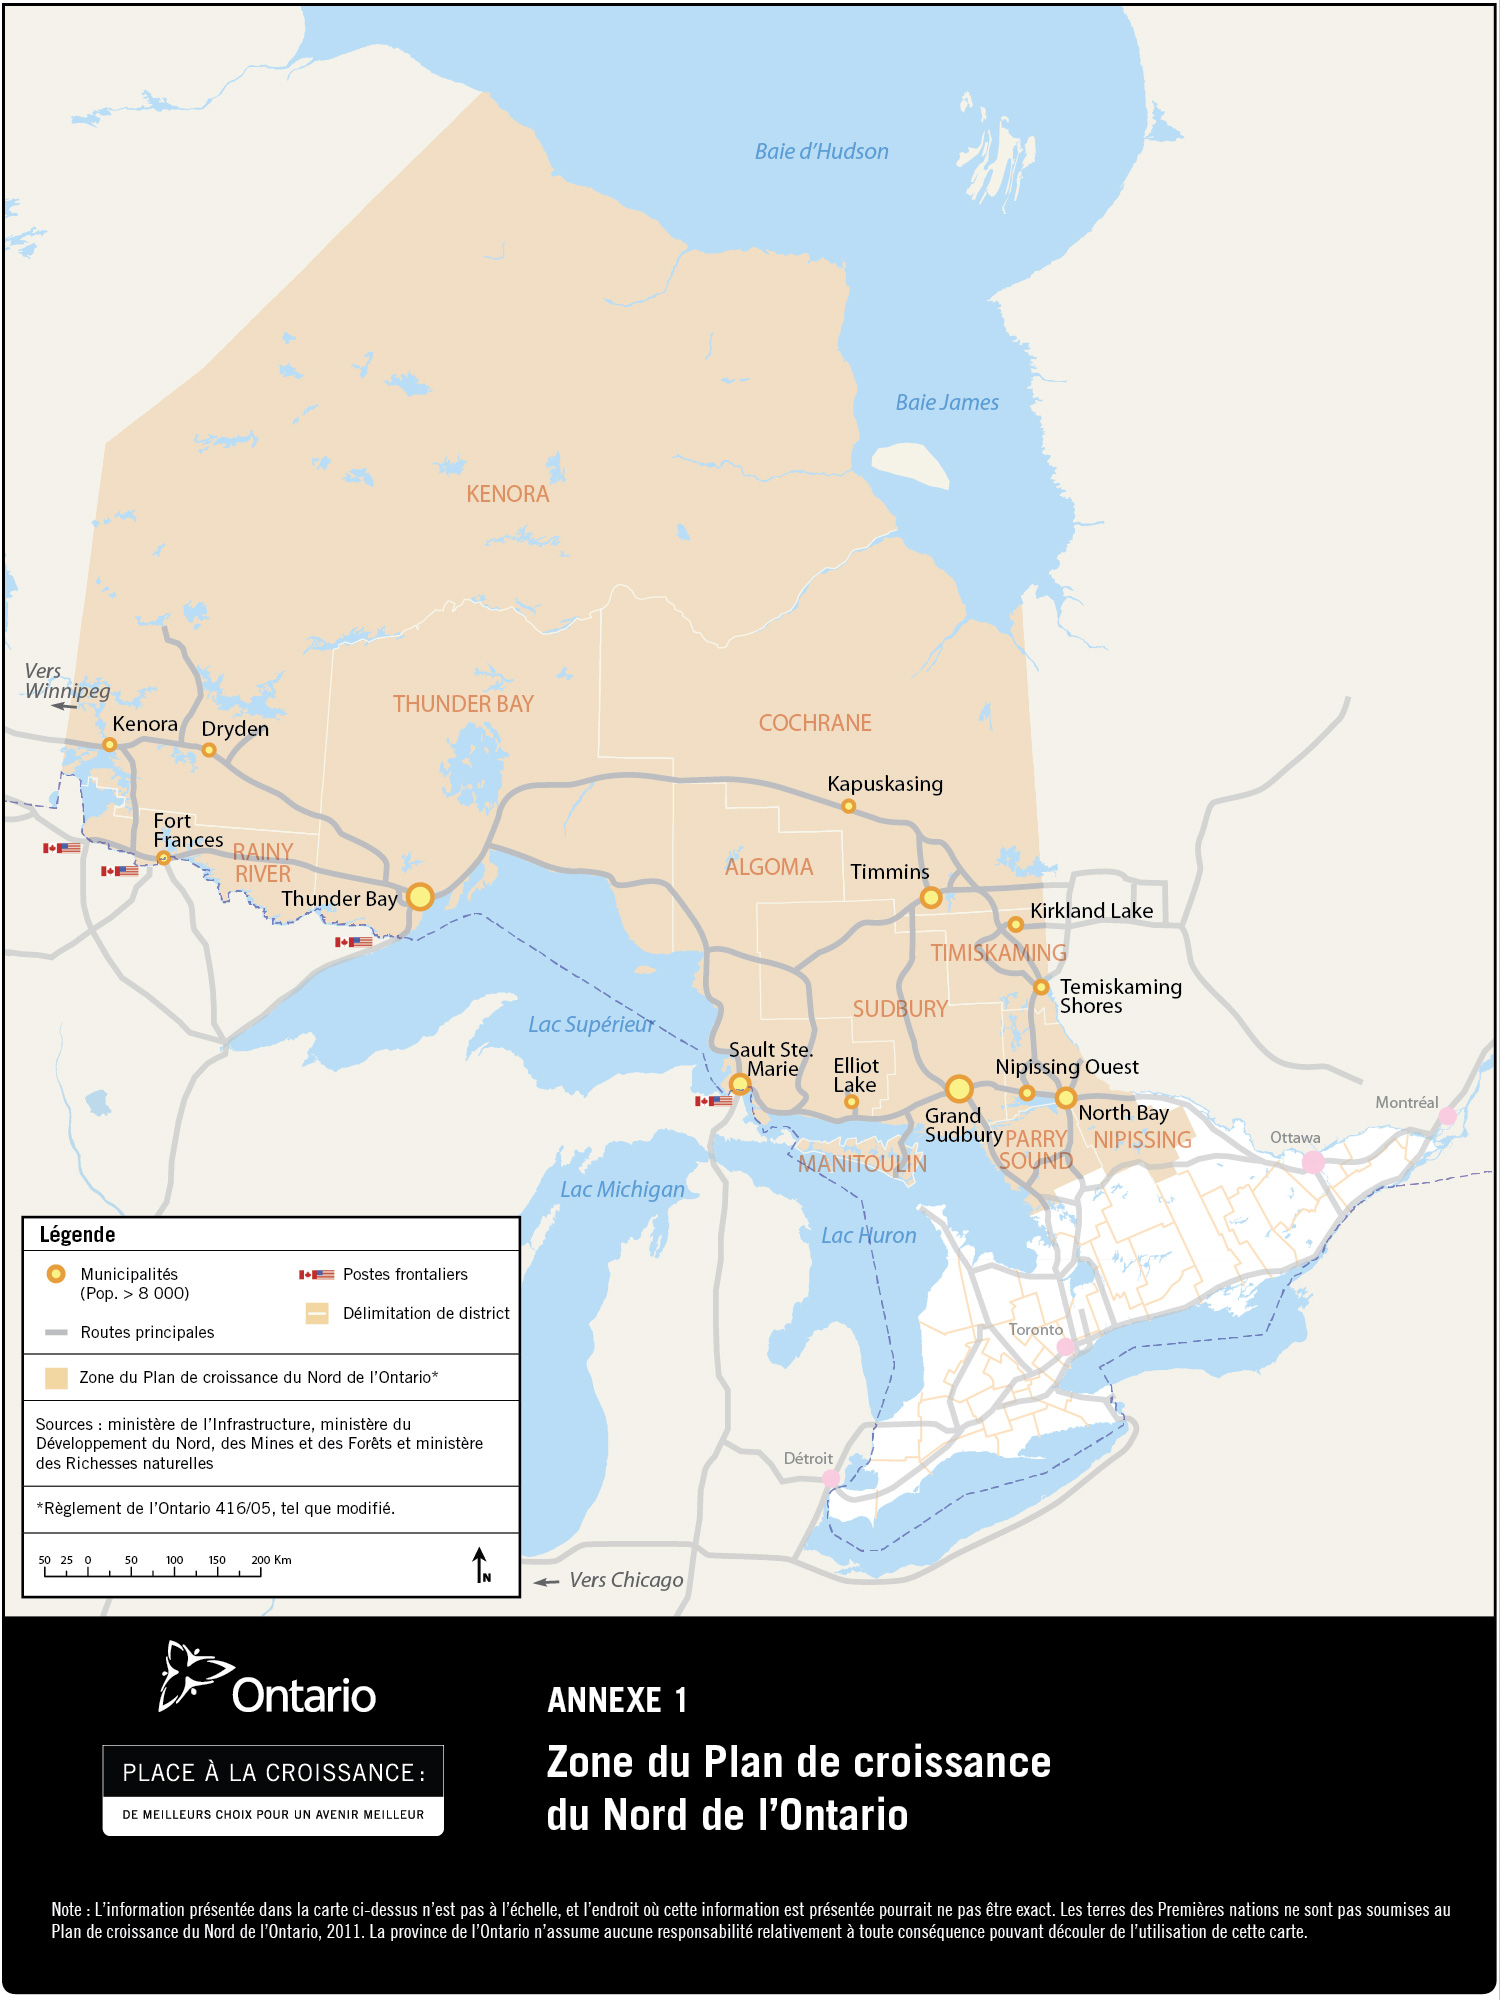 Zone du Plan de croissance du Nord de l'Ontario